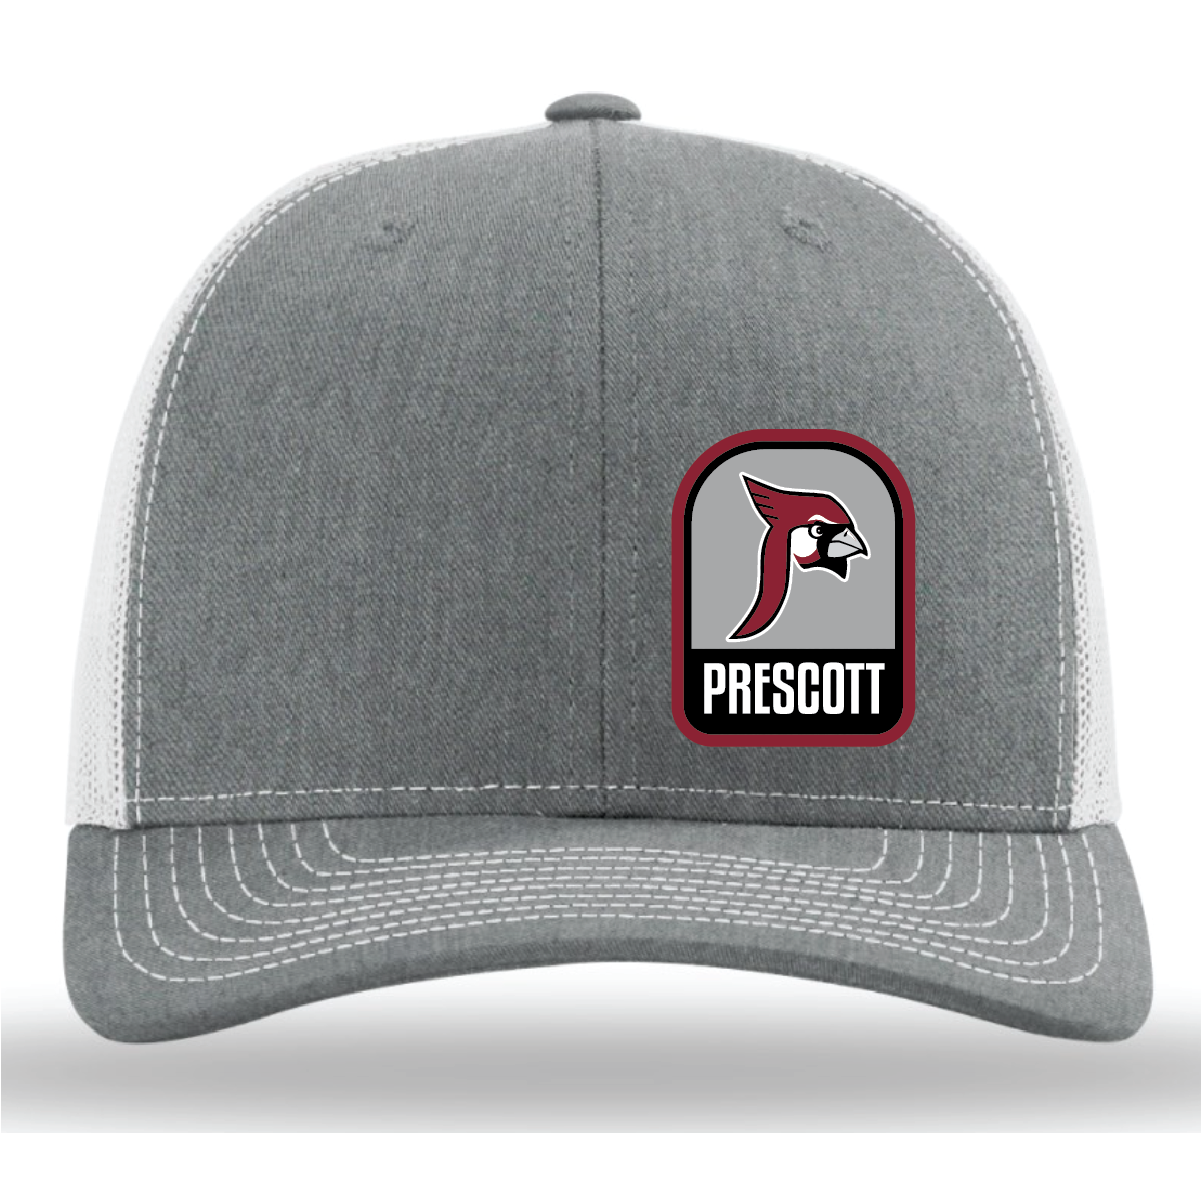 Prescott Retail - 112 Trucker Hat with Patch